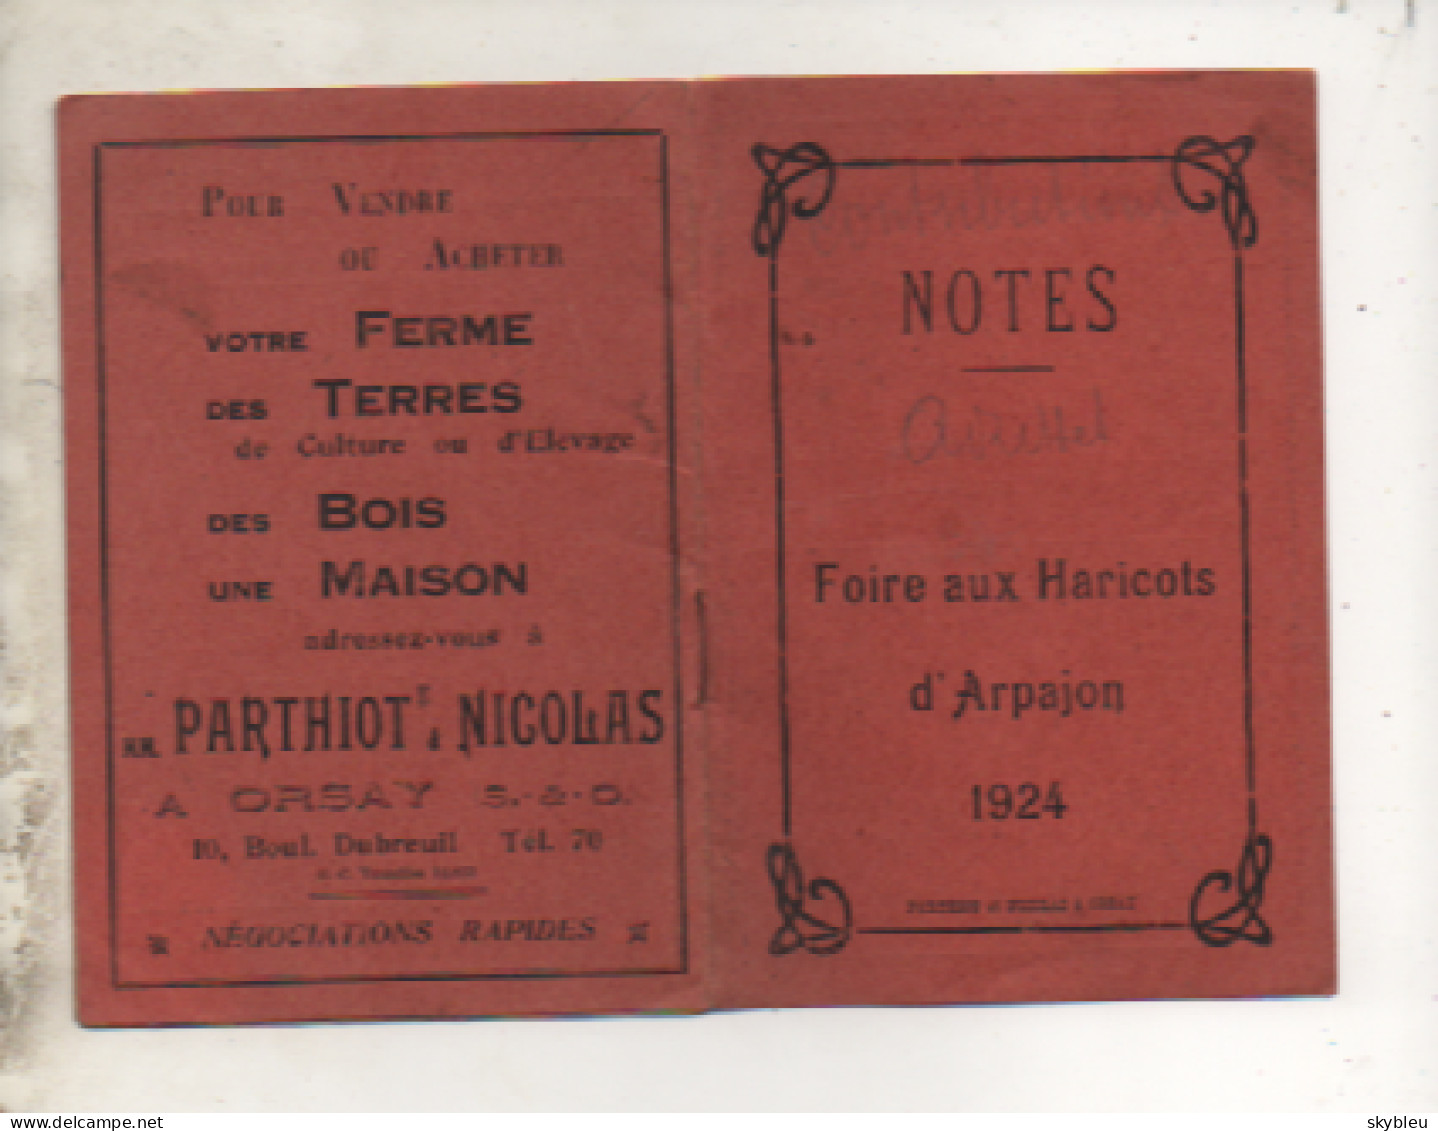 91. ARPAJON - Notes - Foire Aux Haricots D'Arpajon - 1924 -  Carnet - - Werbung